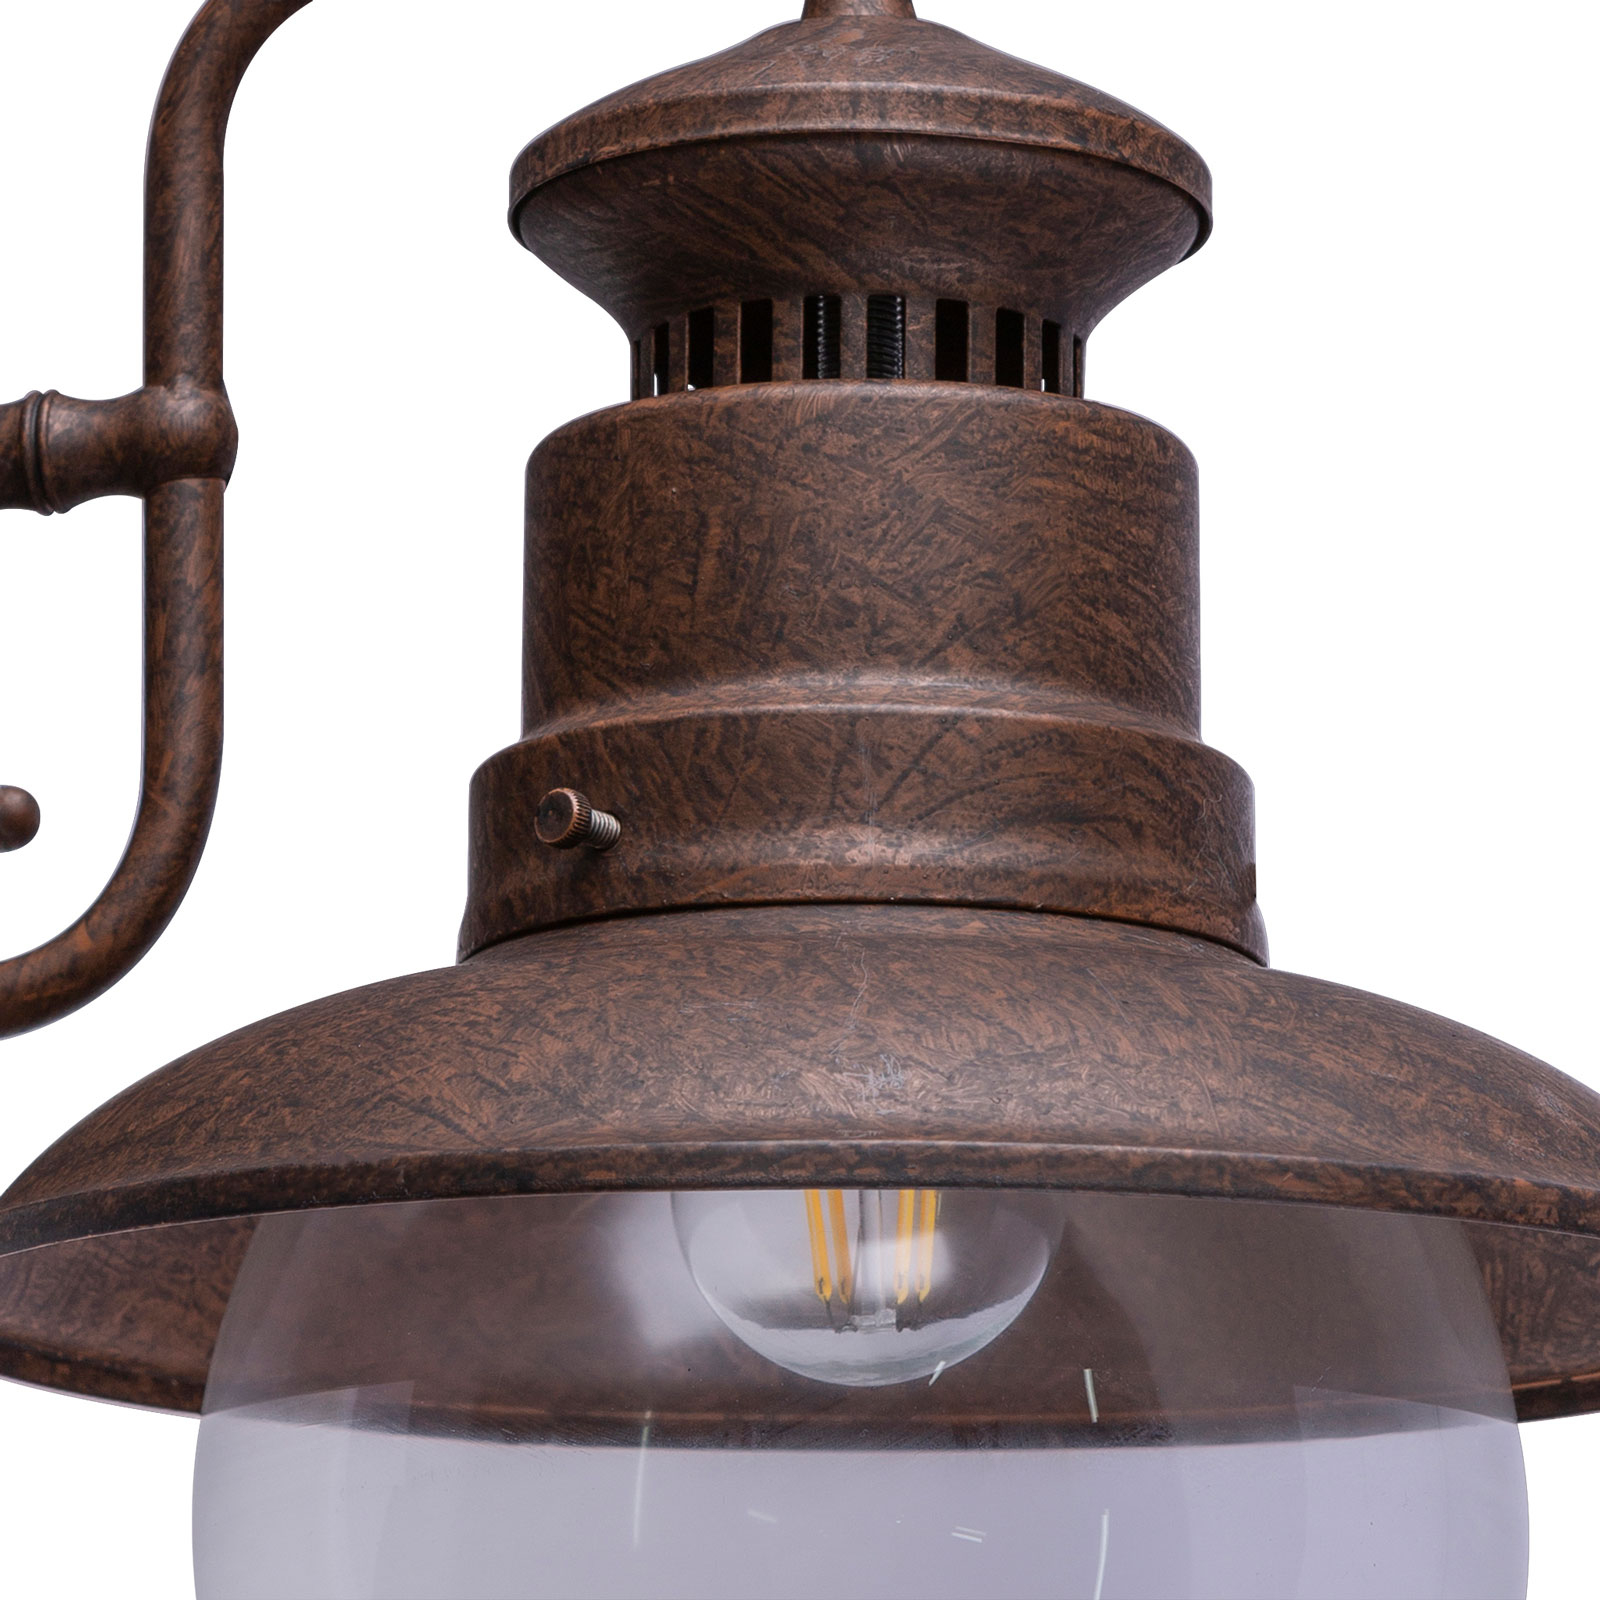 Sella kültéri fali lámpa rozsdaszínű acélból